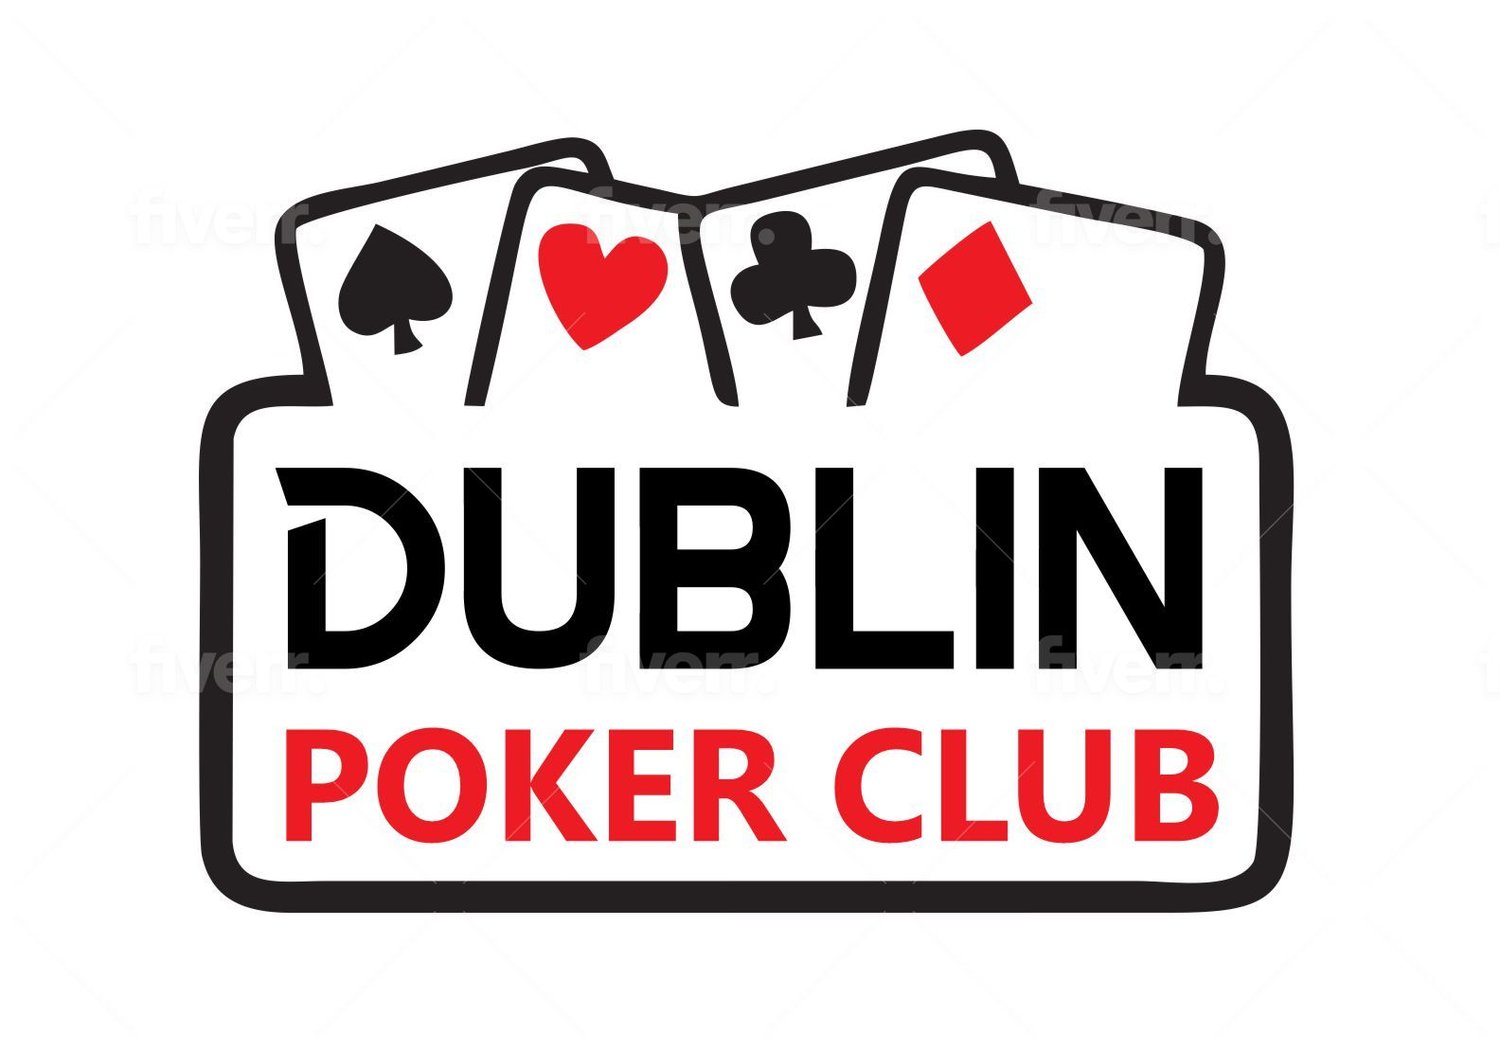 Dublin Poker Club